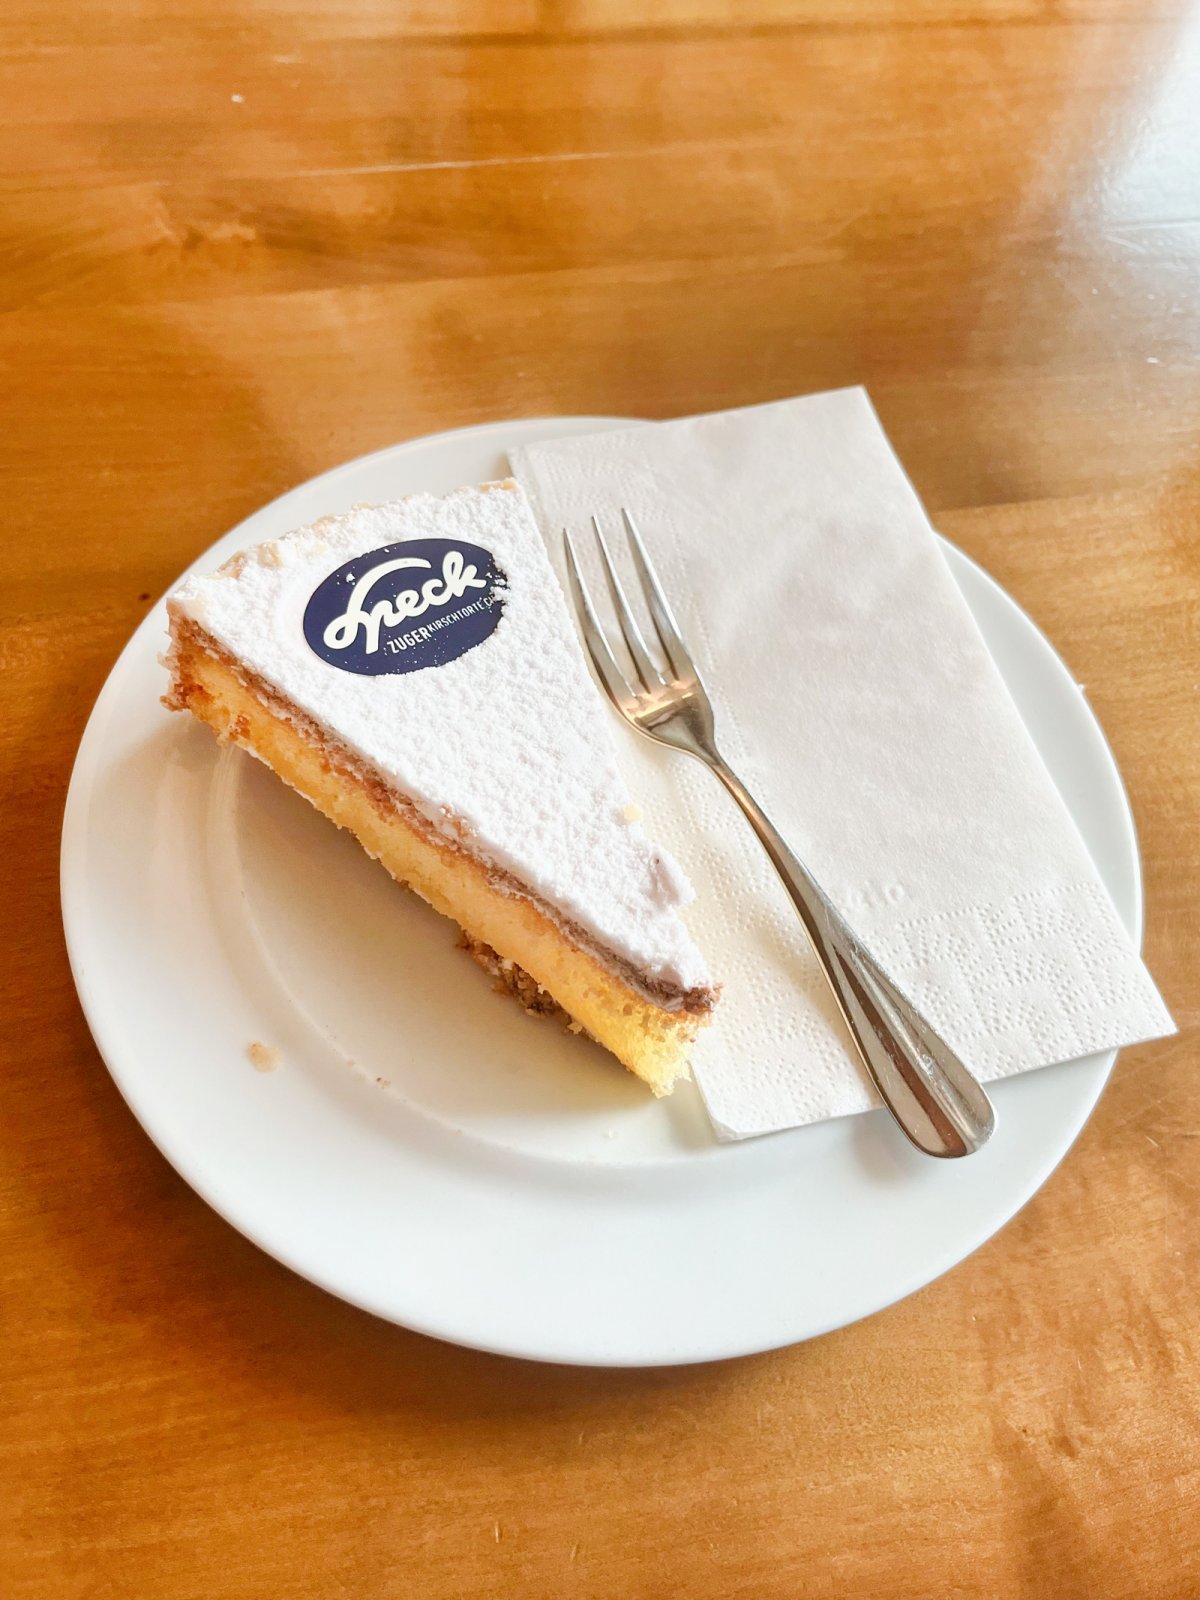 A slice of Zuger Kirschtorte at Café Speck